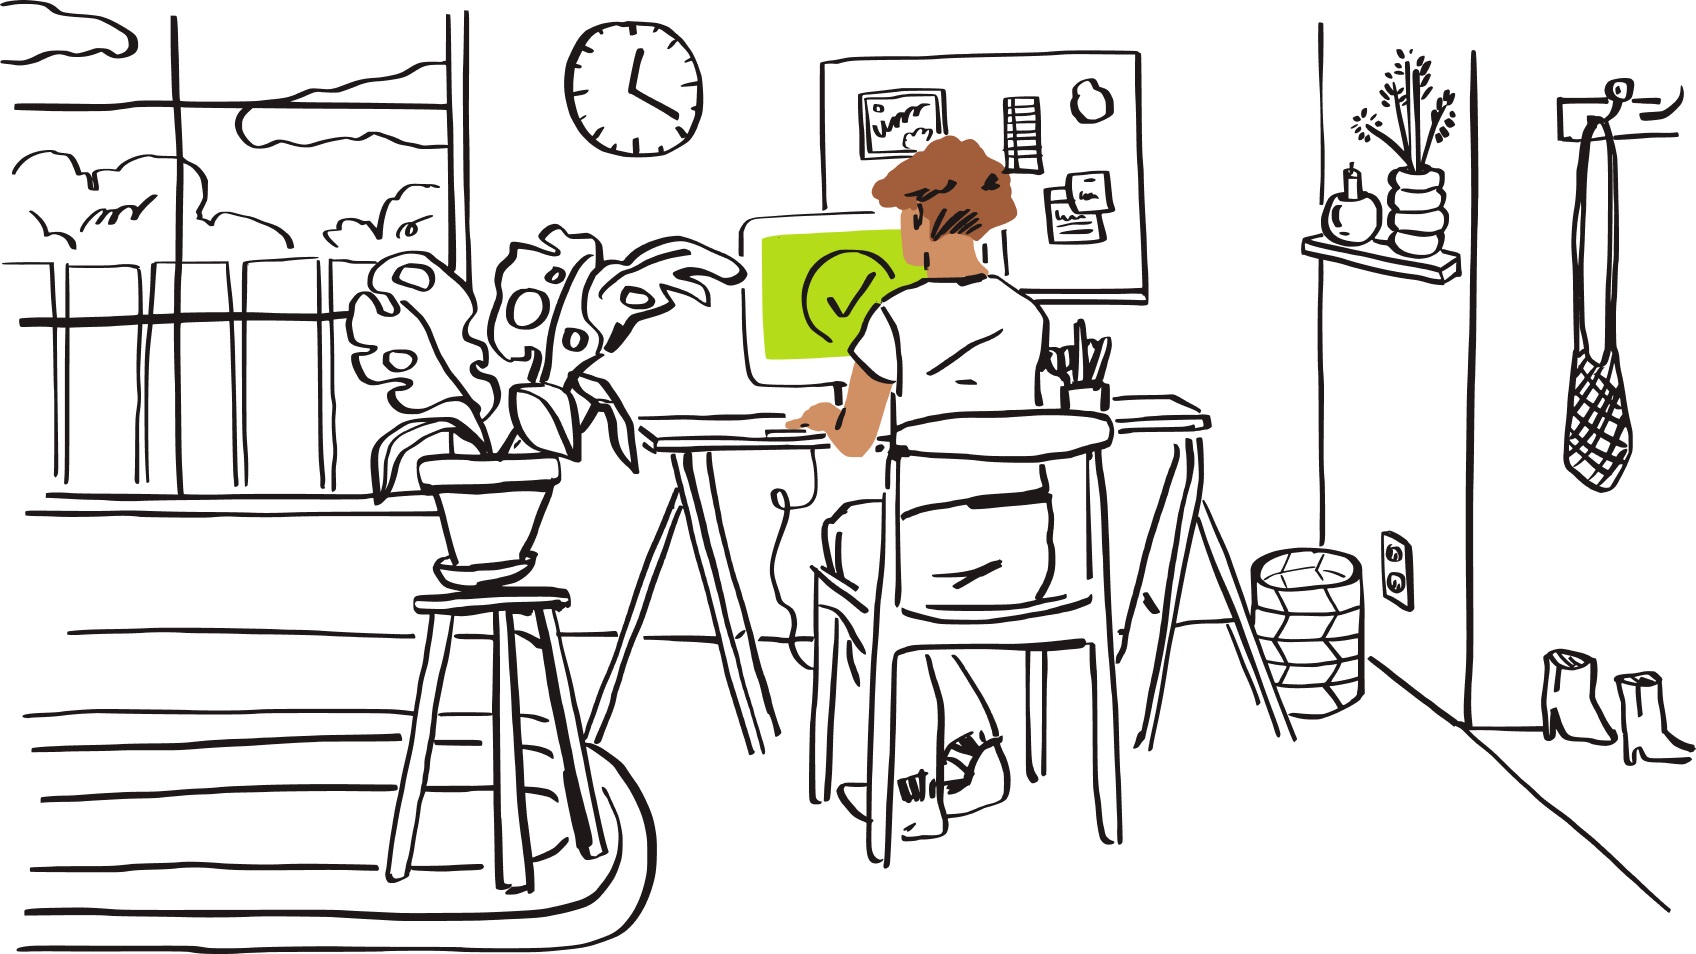 Удаленный работник сидит за столом в своем домашнем офисе перед зеленым монитором, на котором изображена галочка.